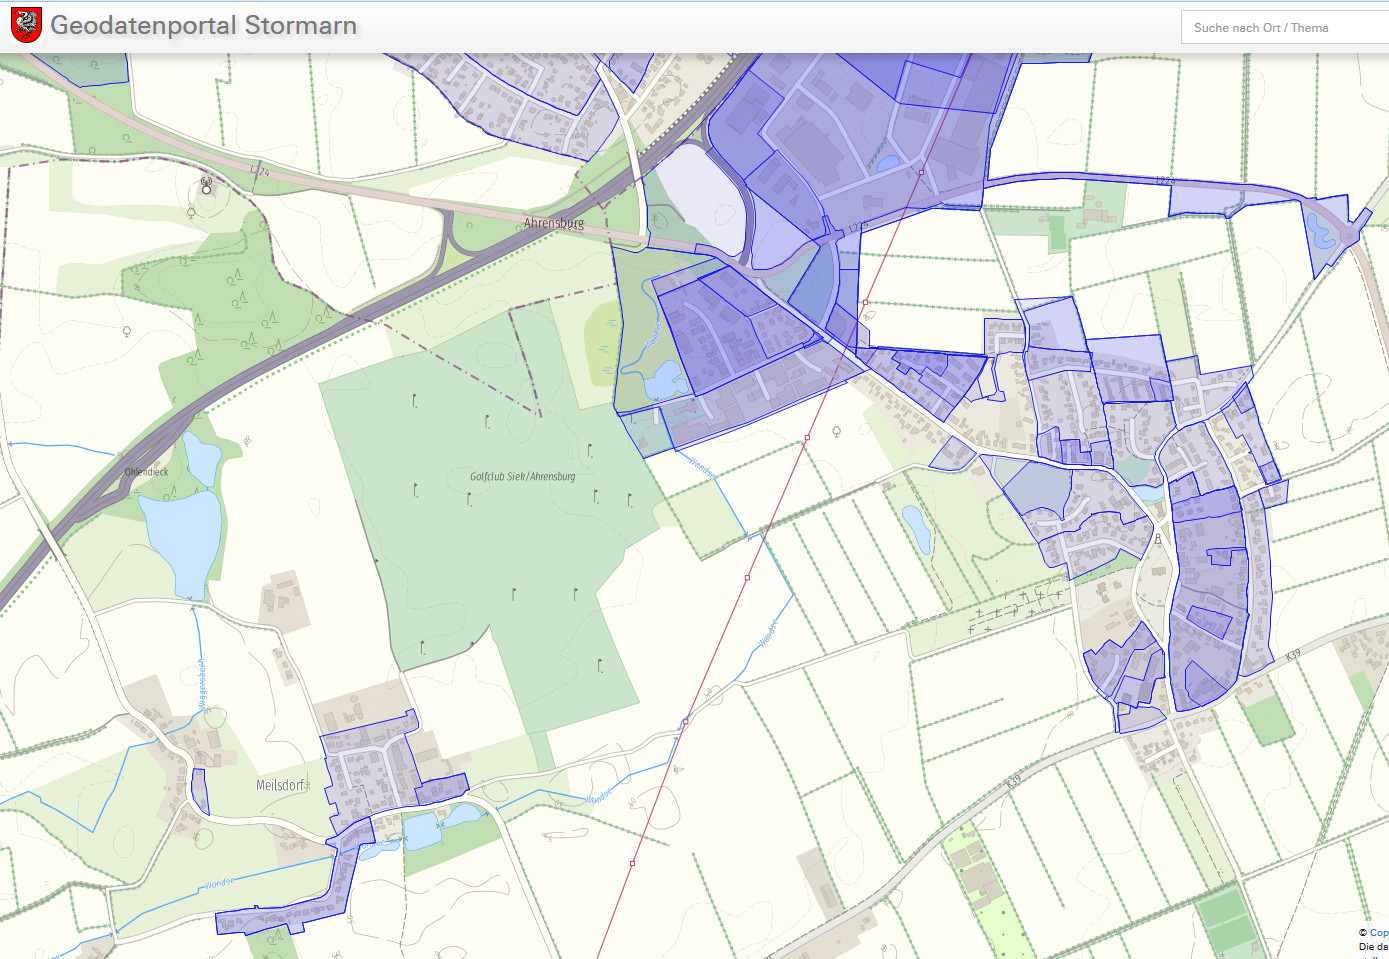 Geodatenportal Stormarn